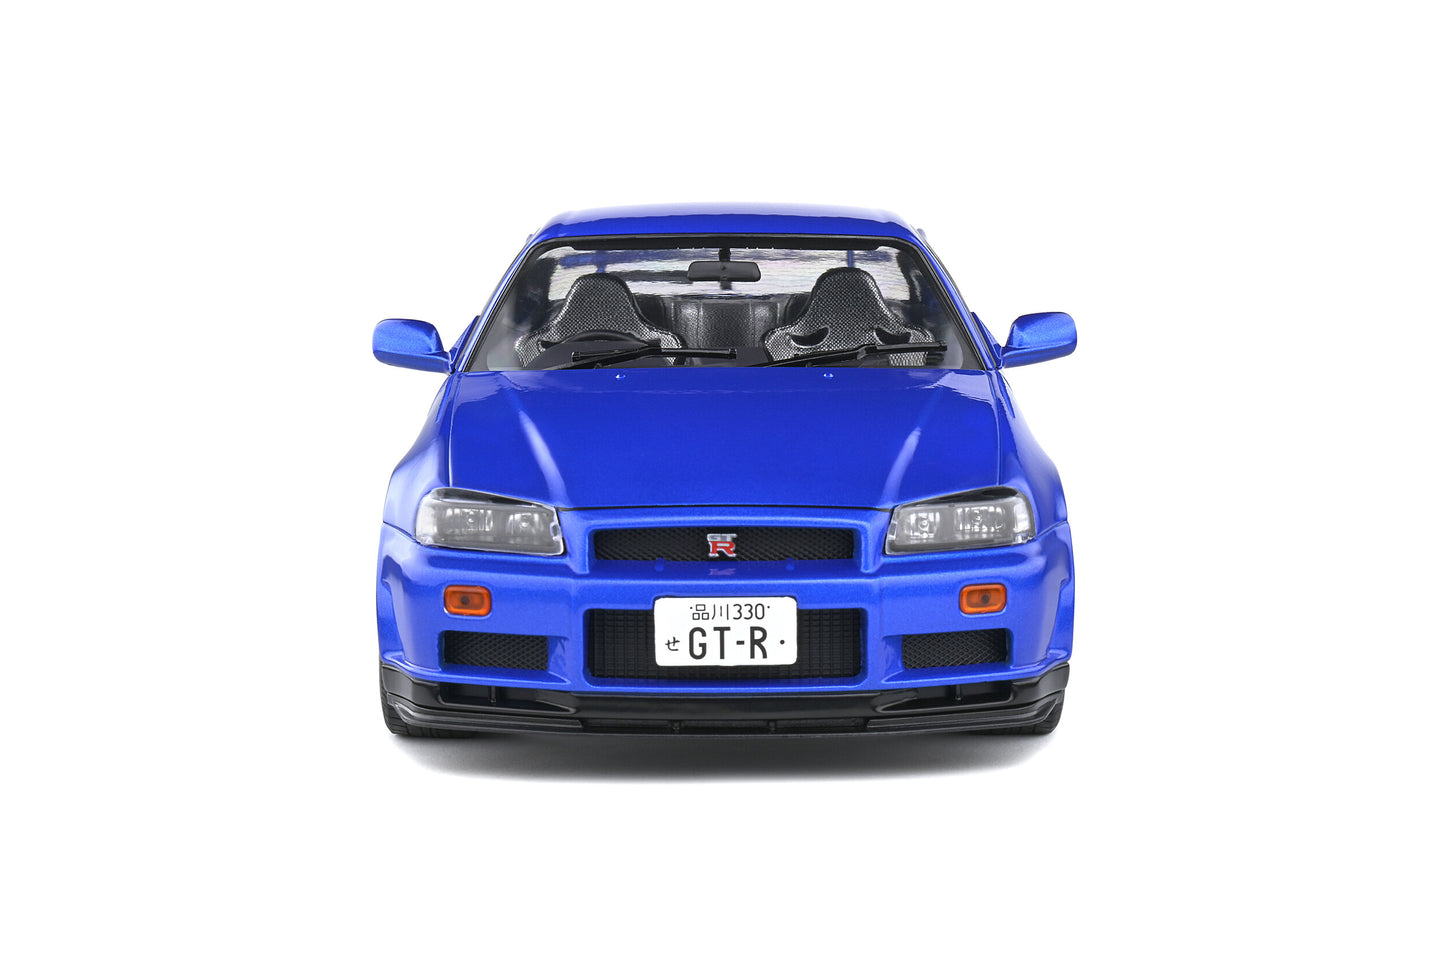 Solido - Nissan Skyline GT-R (R34) (Bayside Blue) 1:18 Scale Model Car